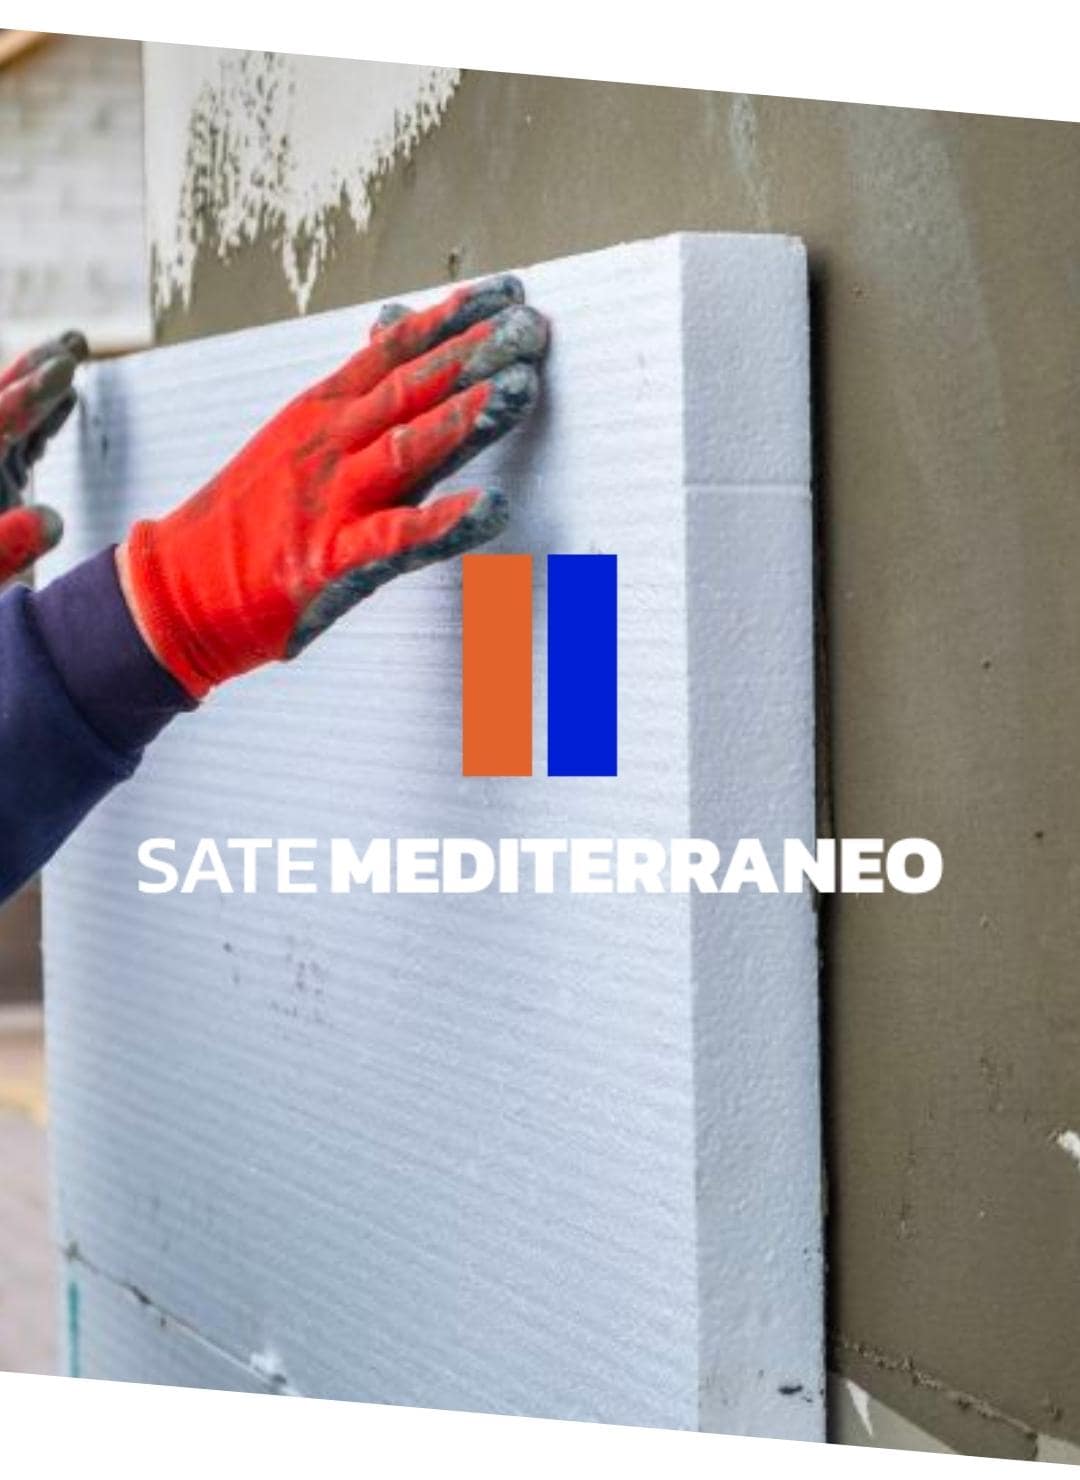 sate mediterraneo la mejor opción para mejorar el aislamiento de edificios